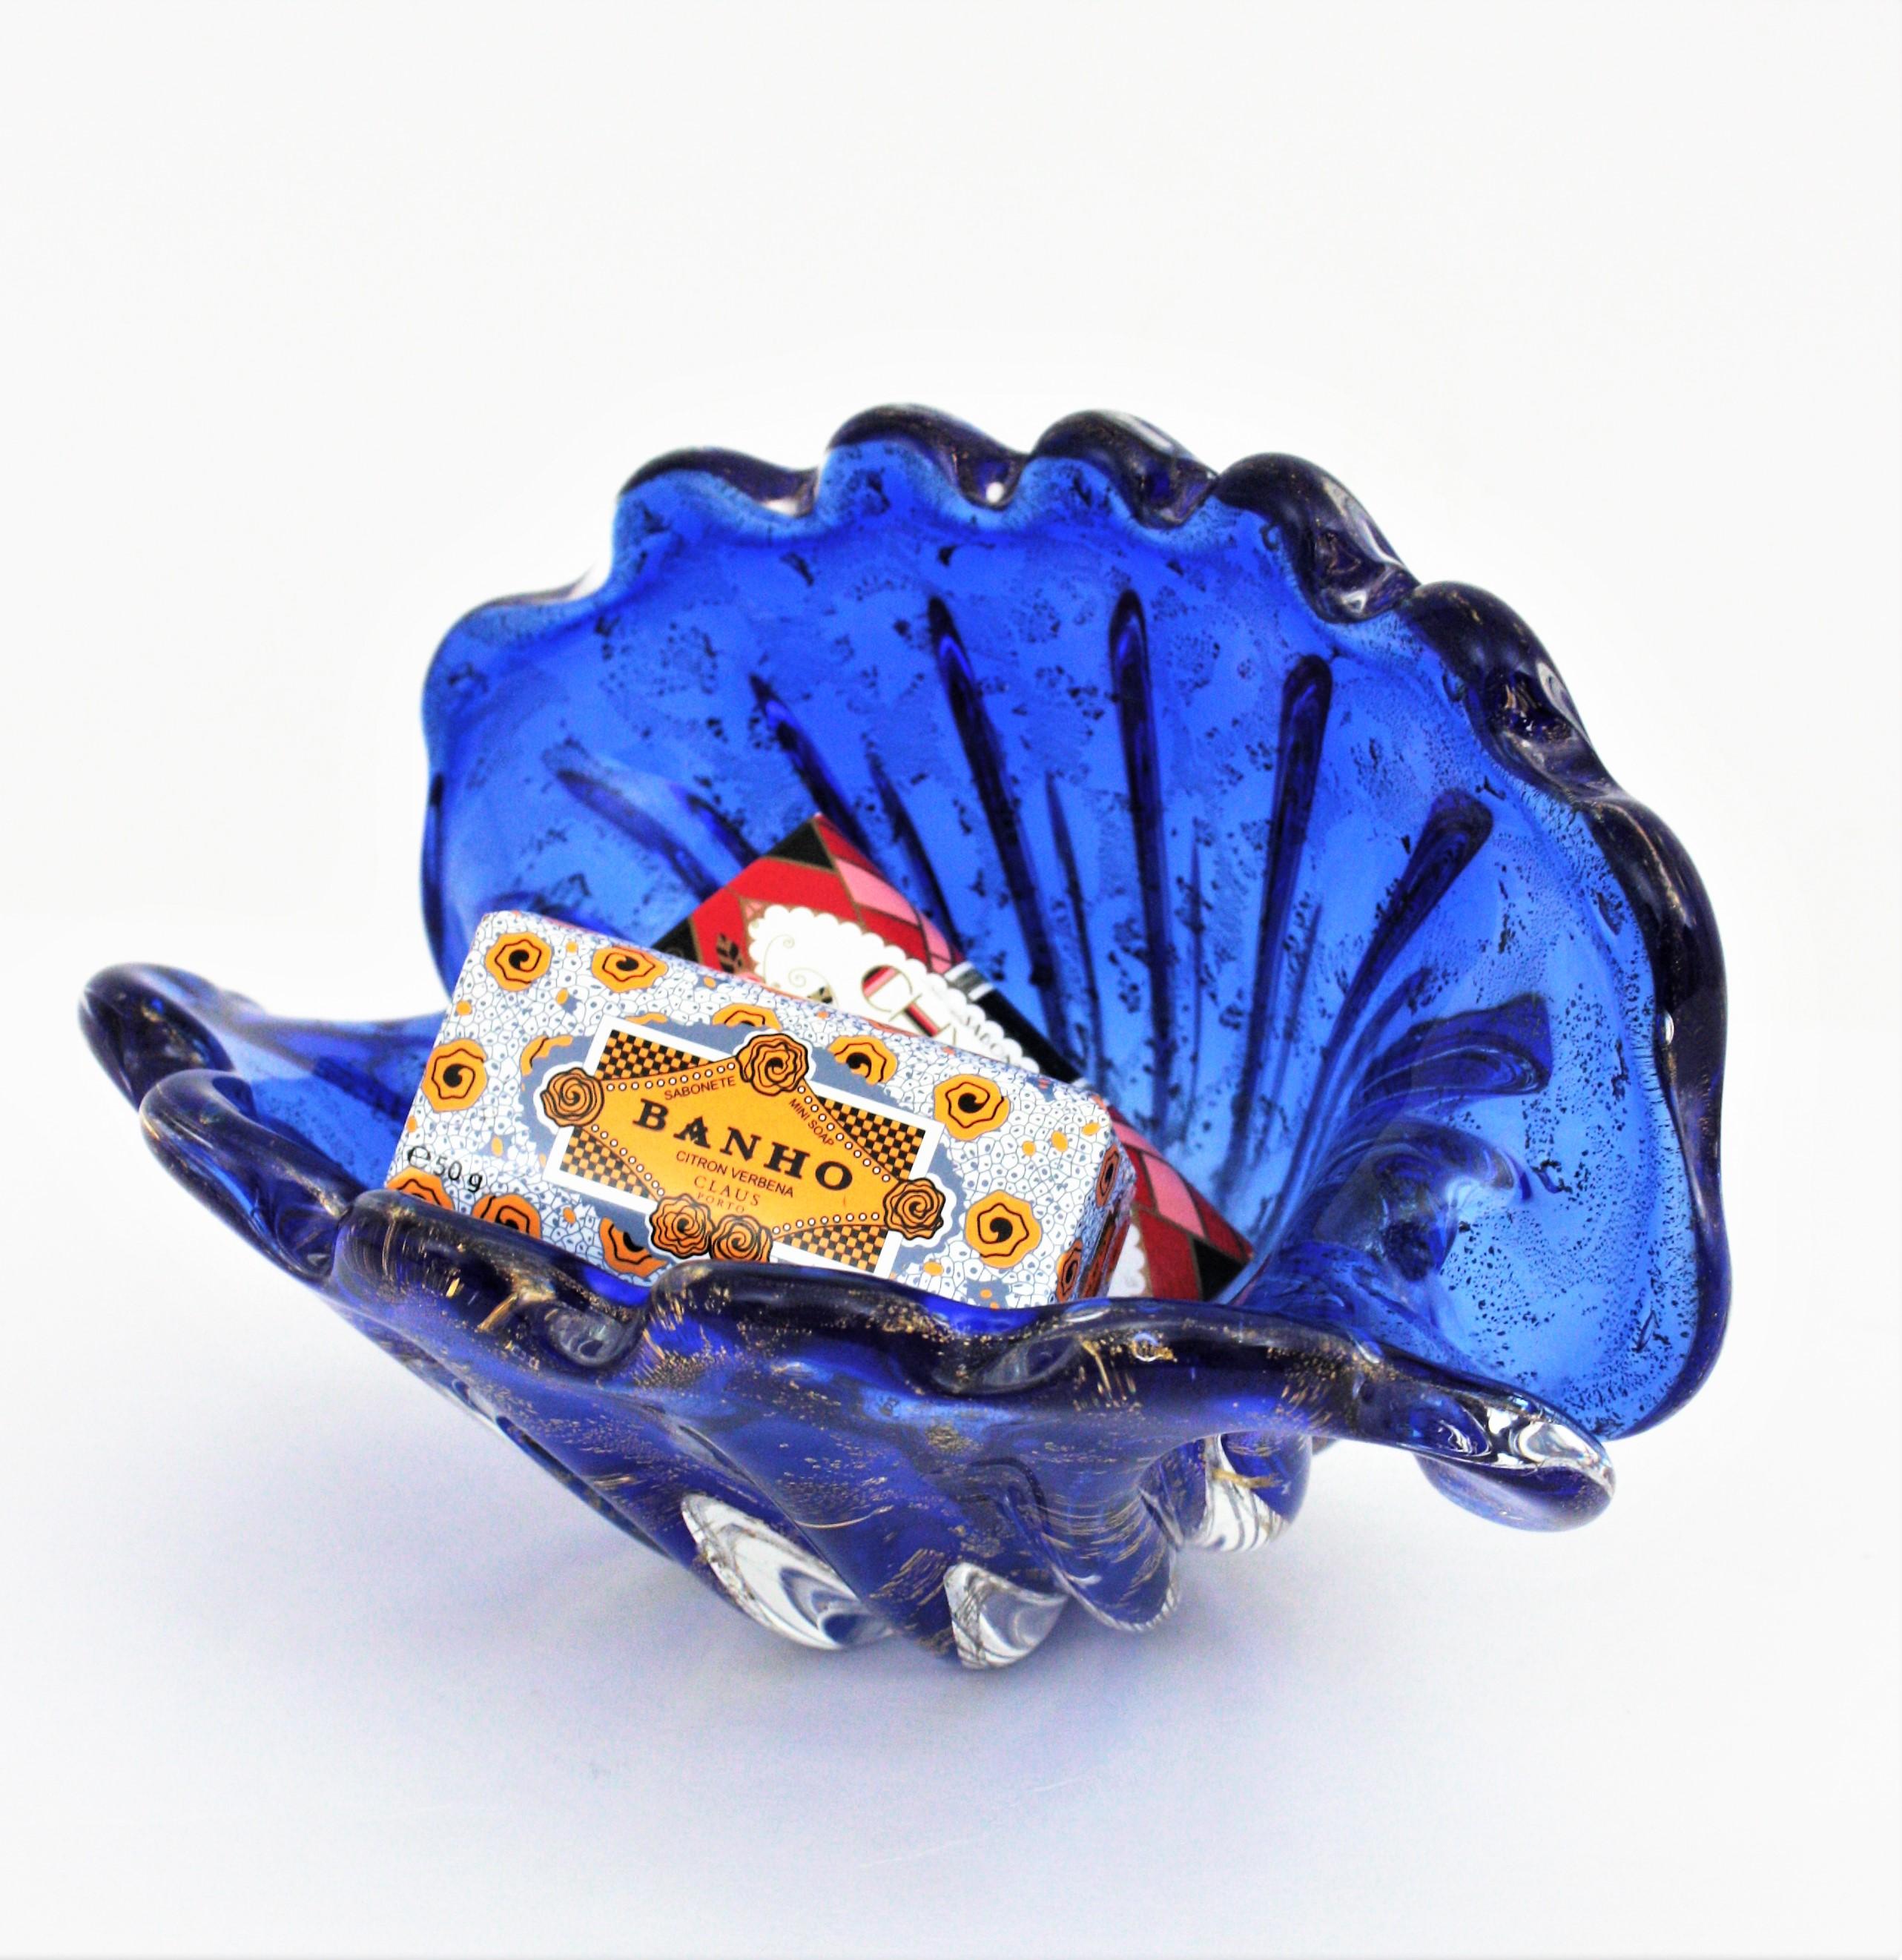 Erstaunliche mundgeblasene Muschelschale aus kobaltblauem Glas mit Goldflecken. Archimede Seguso zugeschrieben, Italien, 1950-1960.
Diese große Muschelschale hat eine auffällige Farbe mit blauem Glas, das in klares Glas mit Einschlüssen von